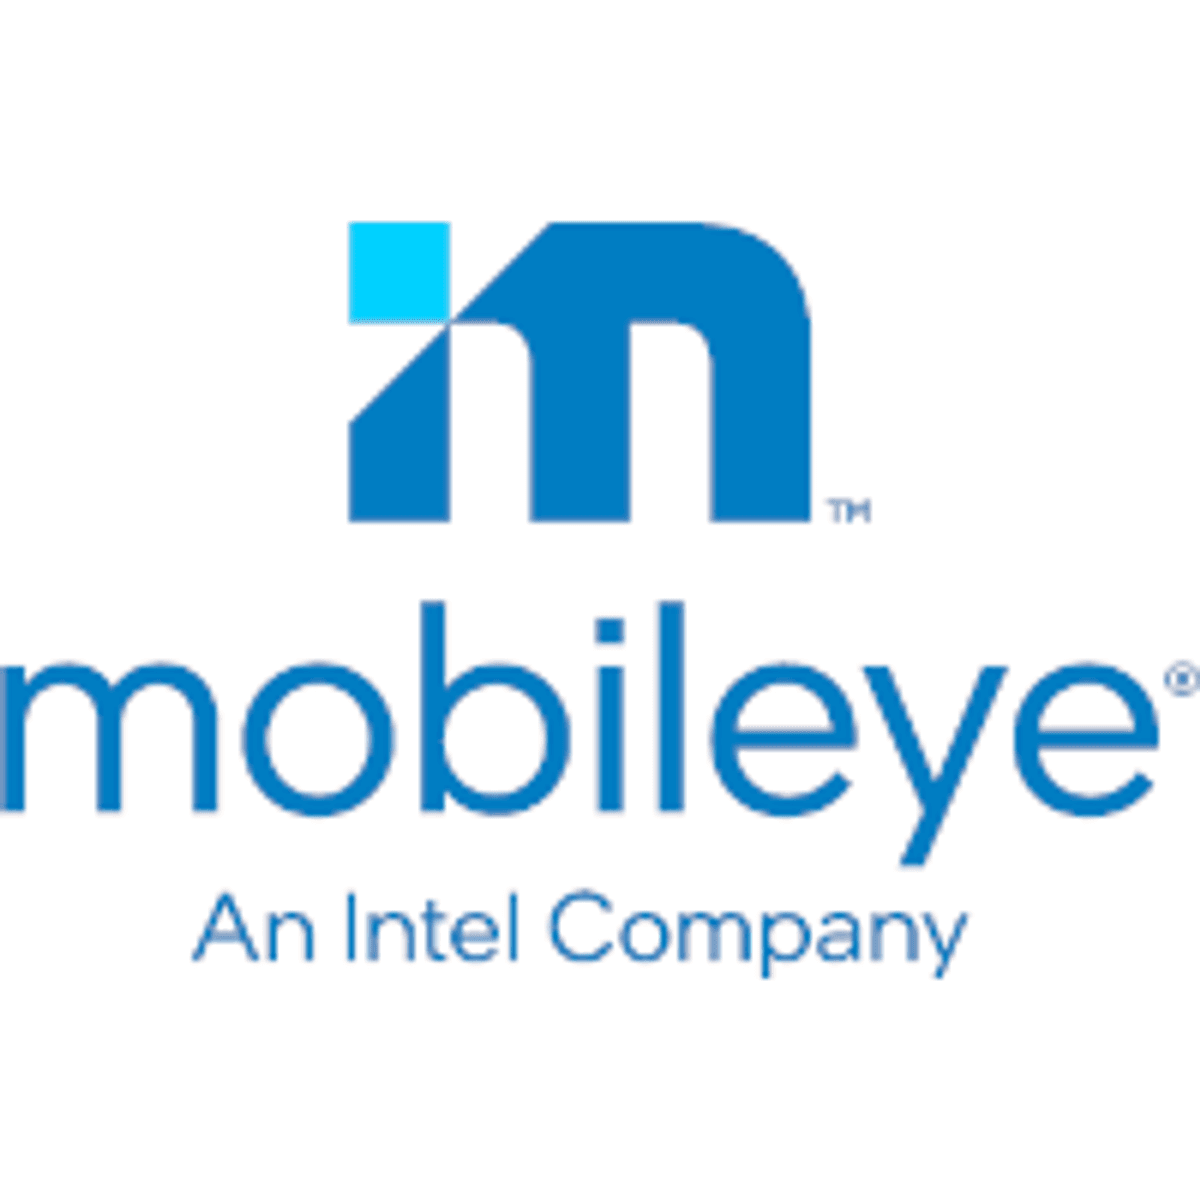 Intel brengt dochter Mobileye naar de beurs image